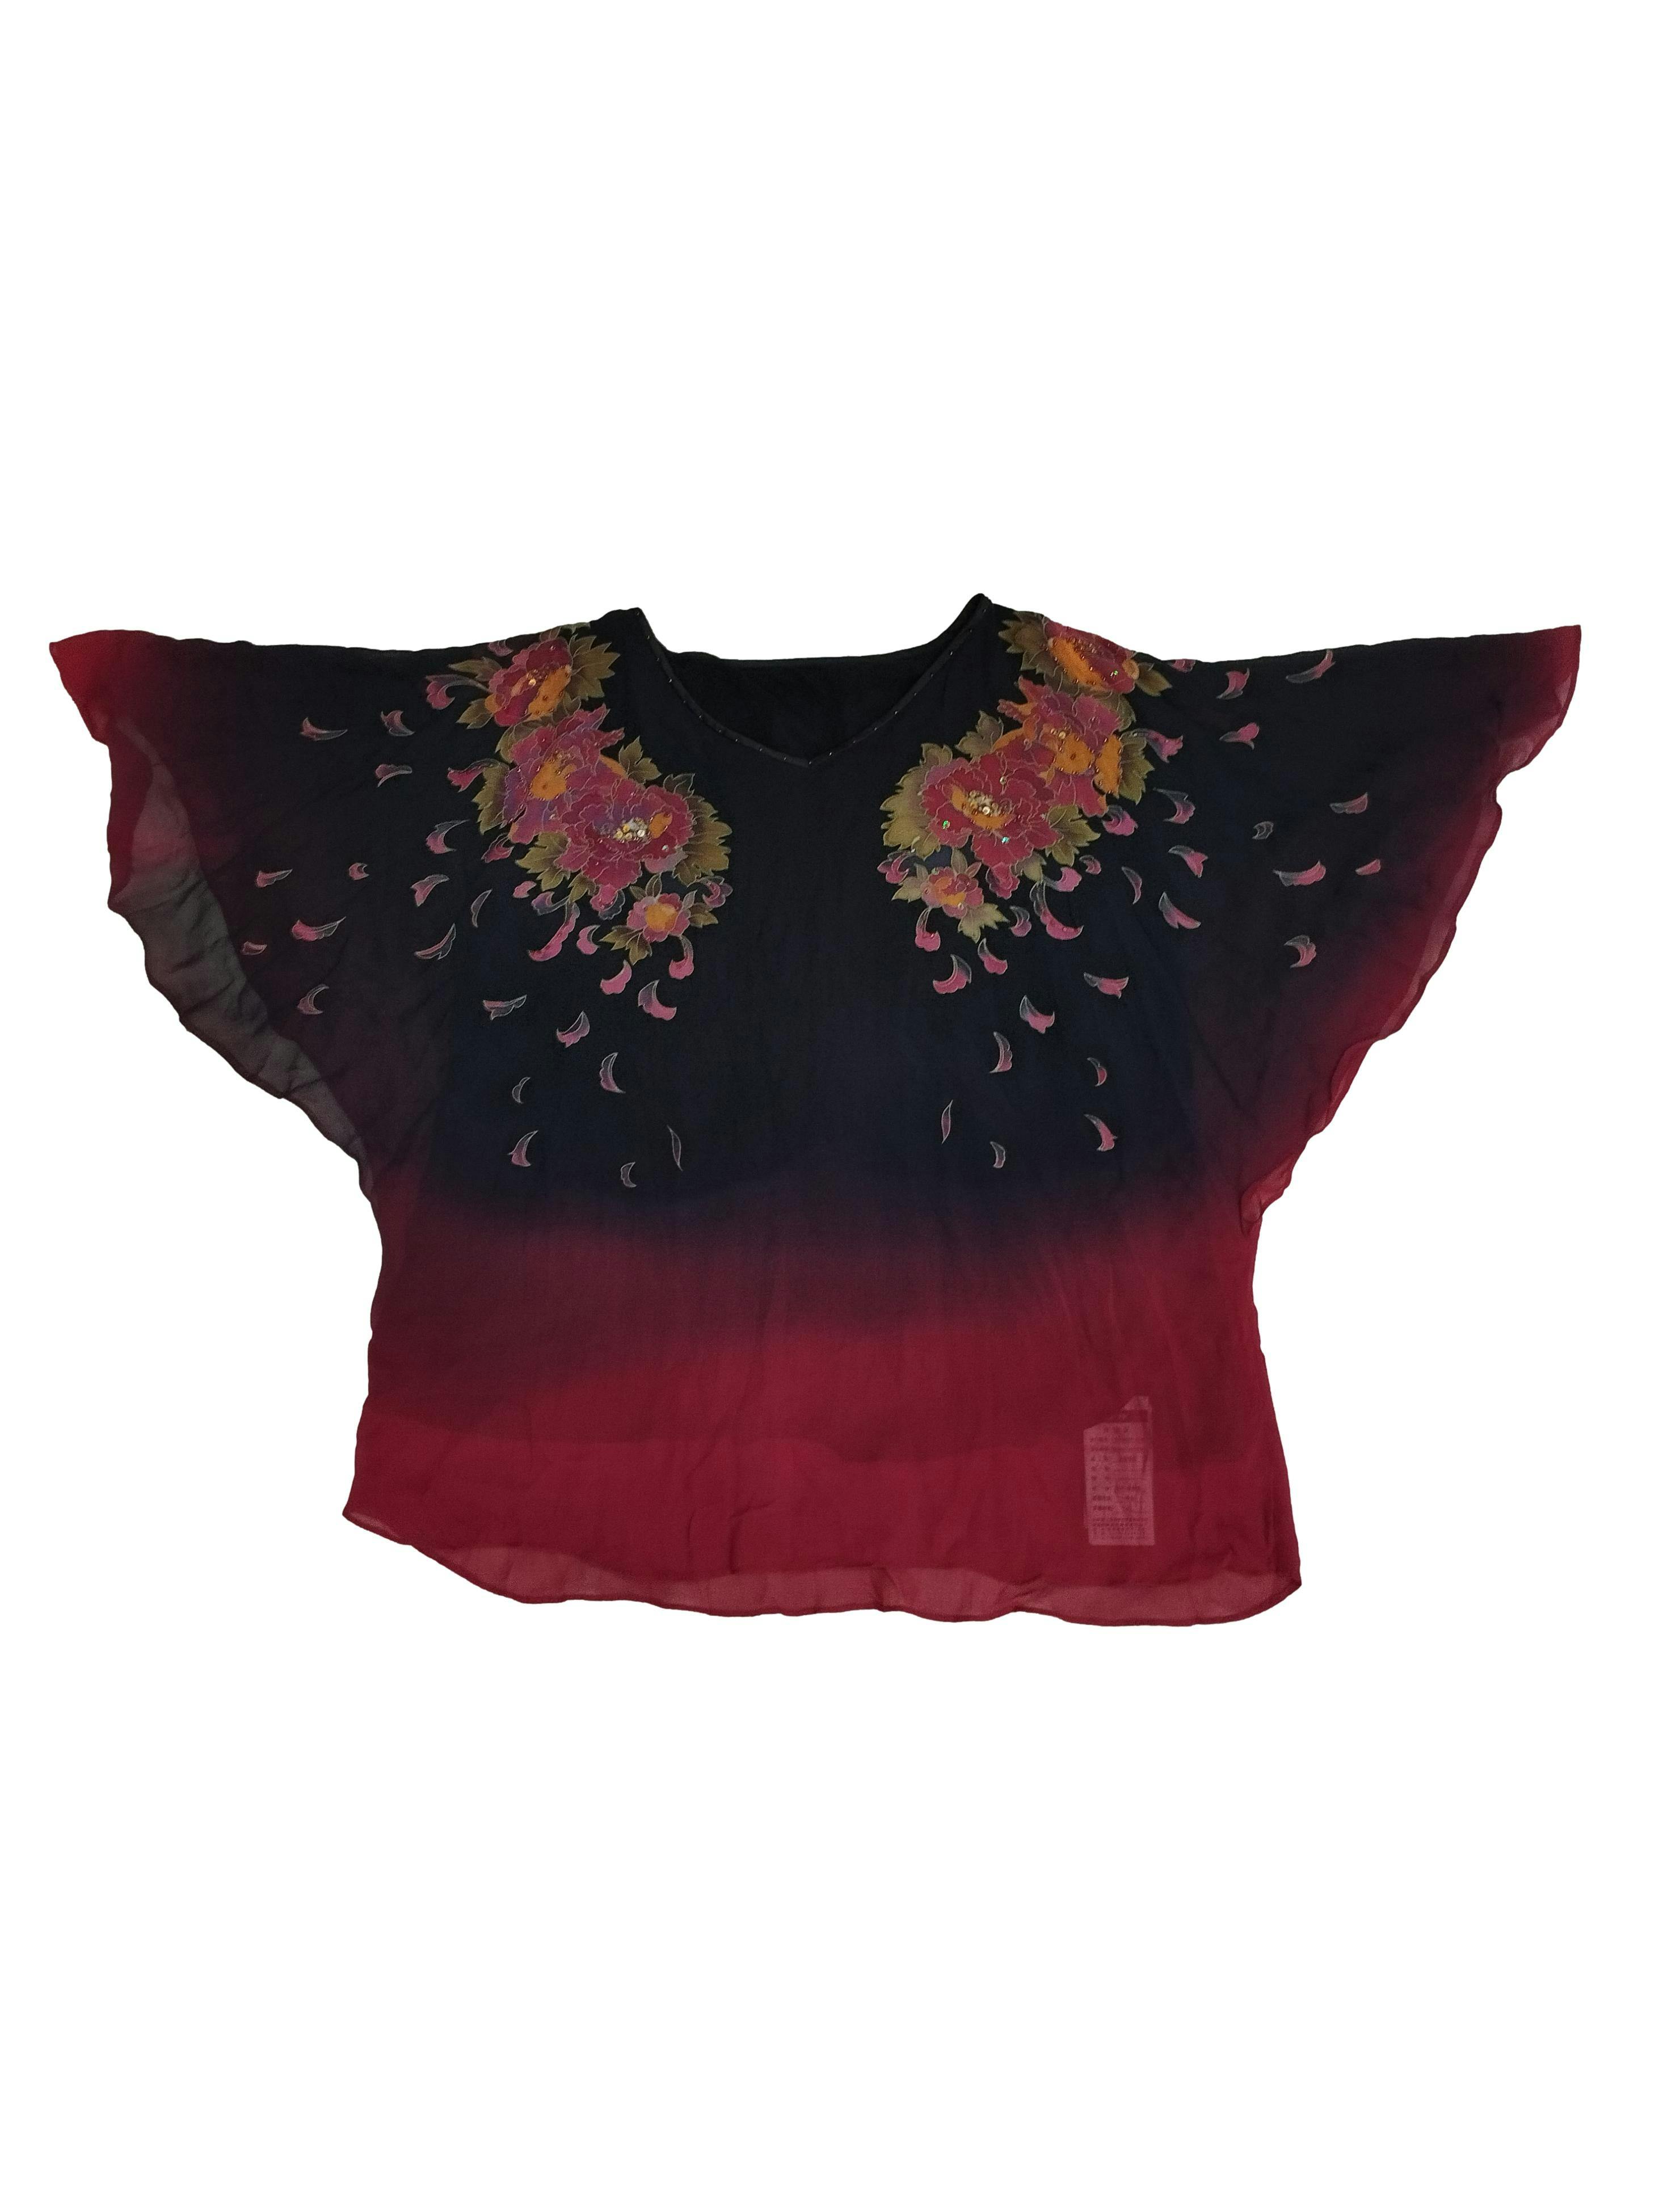 Blusa de gasa en tono rojo y negro, estampado de flores con a´licaciones de lentejuelas y mostacillas, forro. Busto: 108 cm, Largo: 67 cm